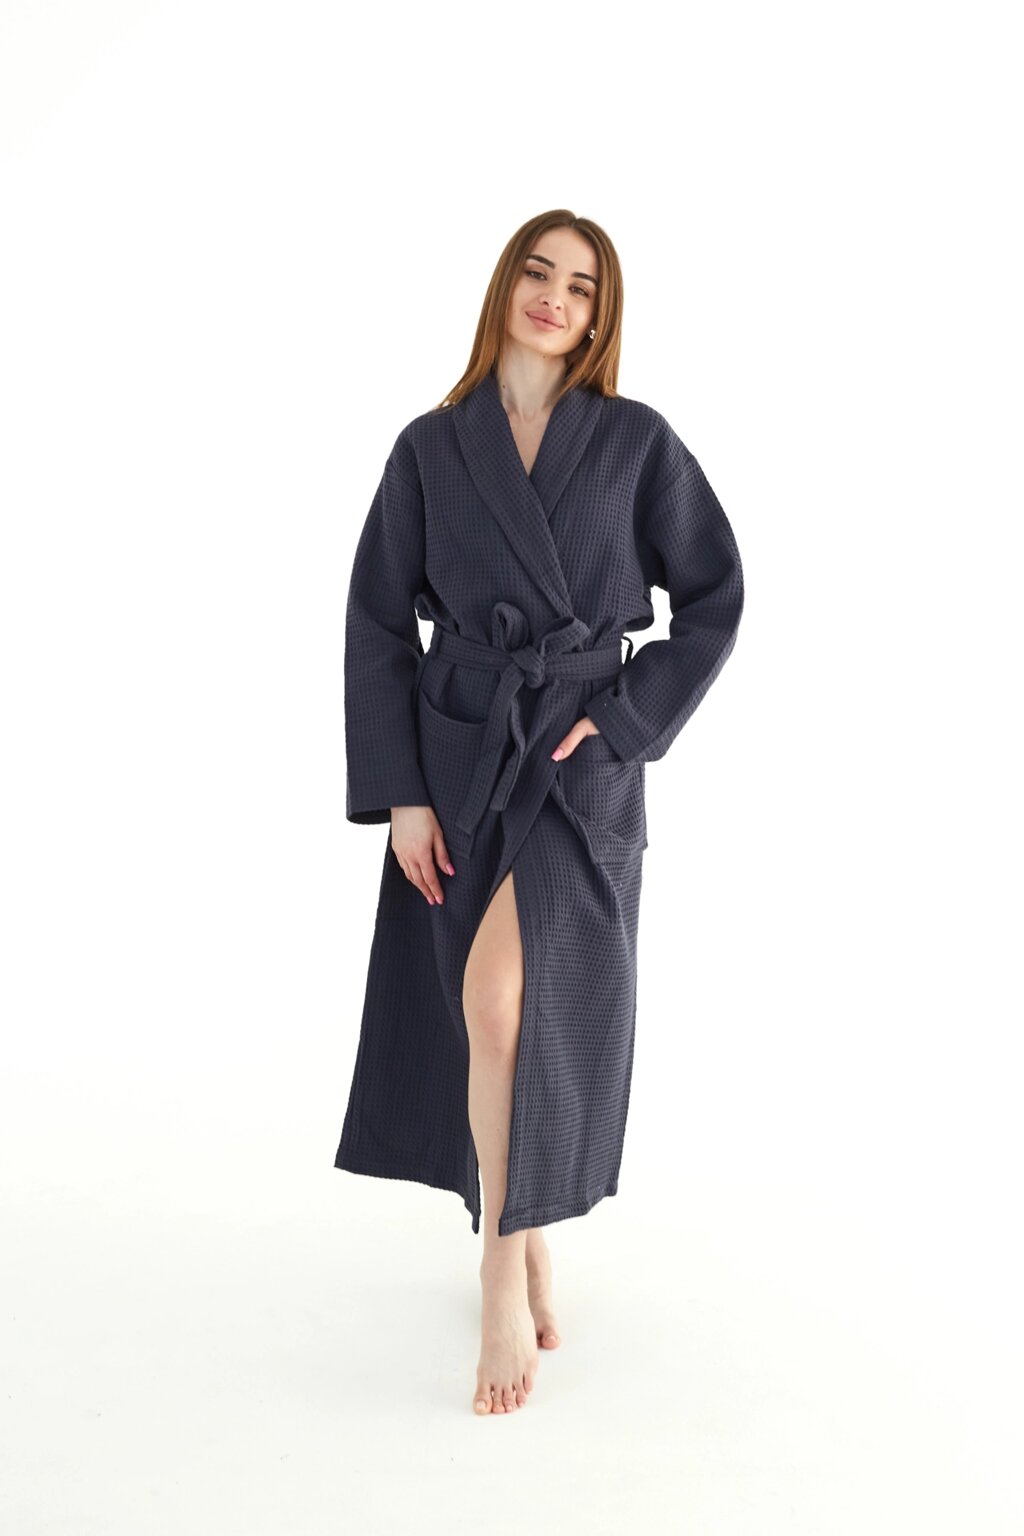 Вафельний халат жіночий темно-сірий 100% бавовна 320 г/м2 від компанії IDEAL TEXTILE: махрові рушники, халати, постільна білизна - фото 1